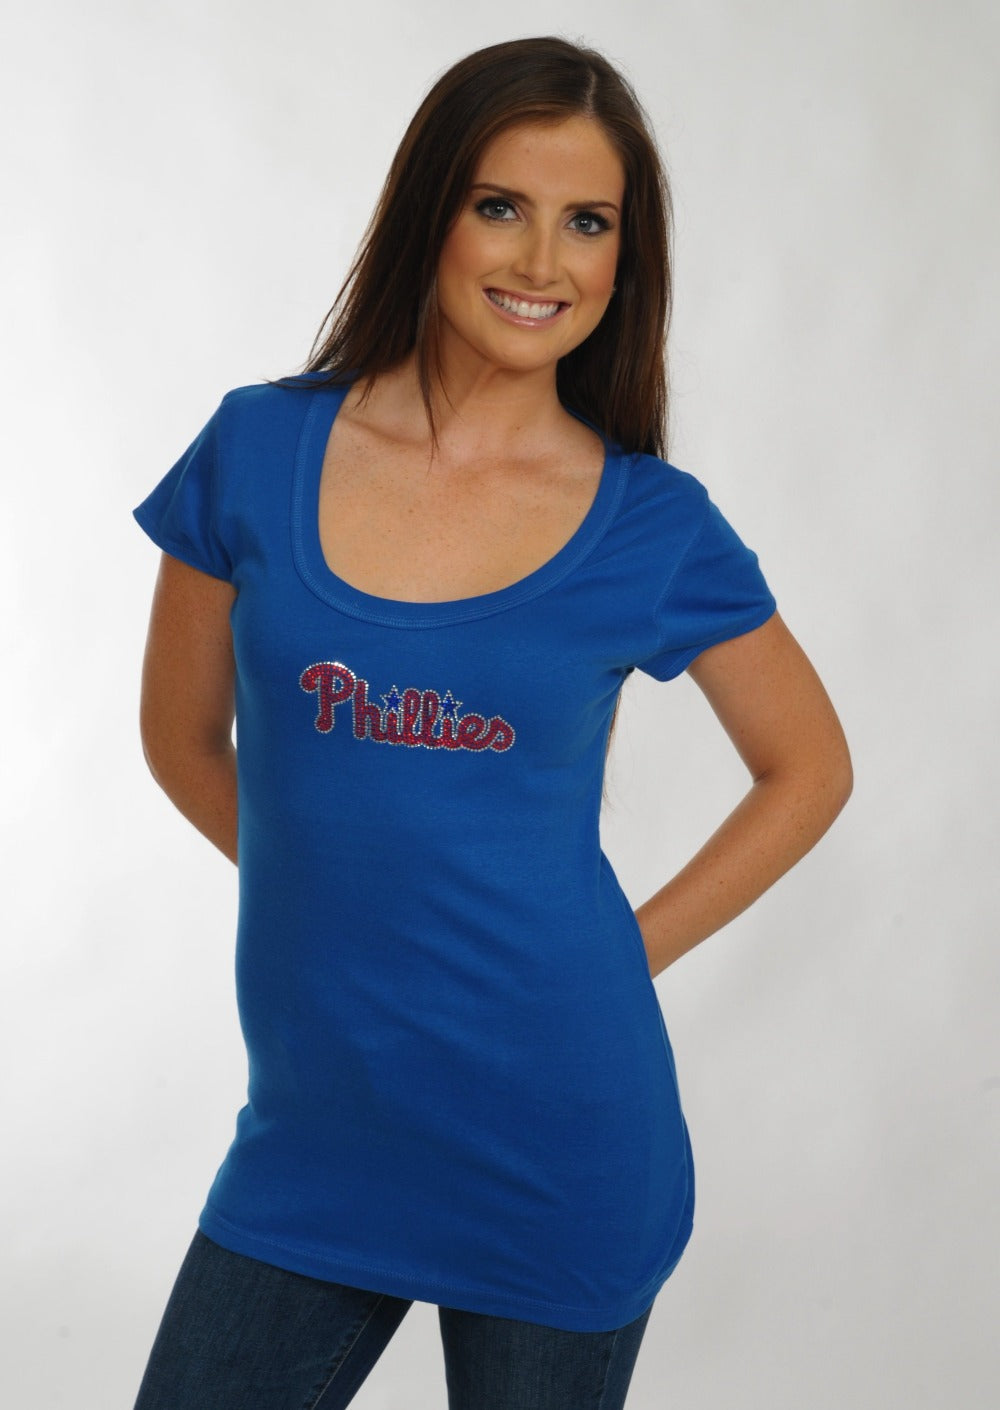 Philadelphia Phillies Scoop Neck Bling Top Royal Blue for Women